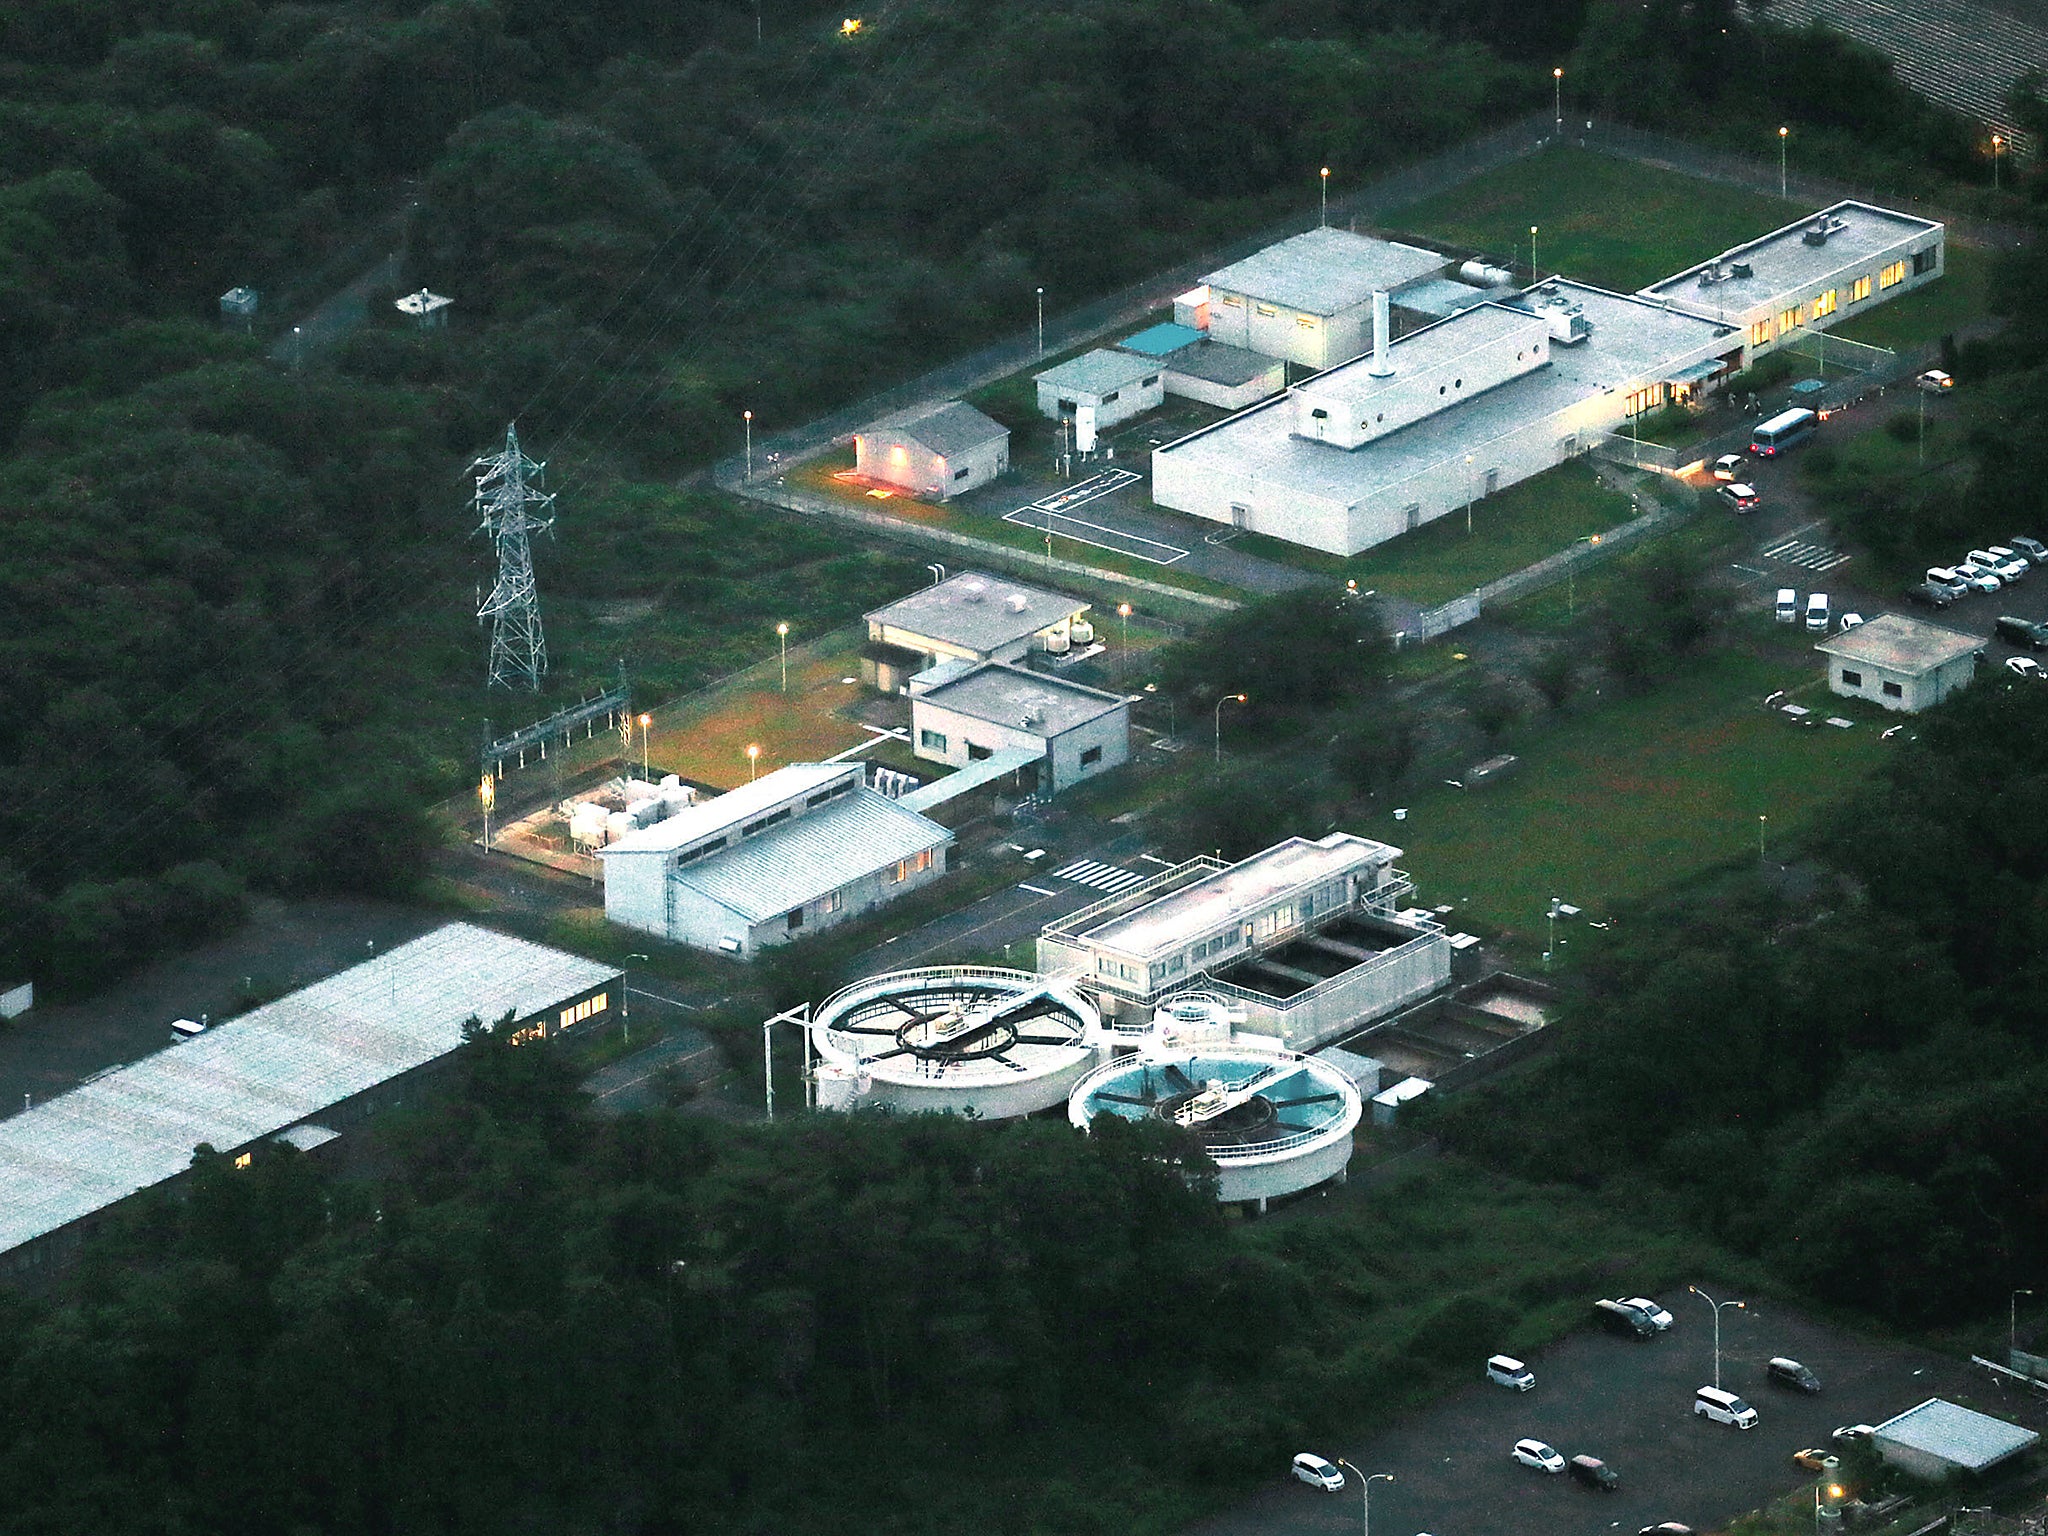 Japan Atomic Energy Agency's (JAEA) Oarai Research and Development Center is seen in Oarai, Ibaraki Prefecture